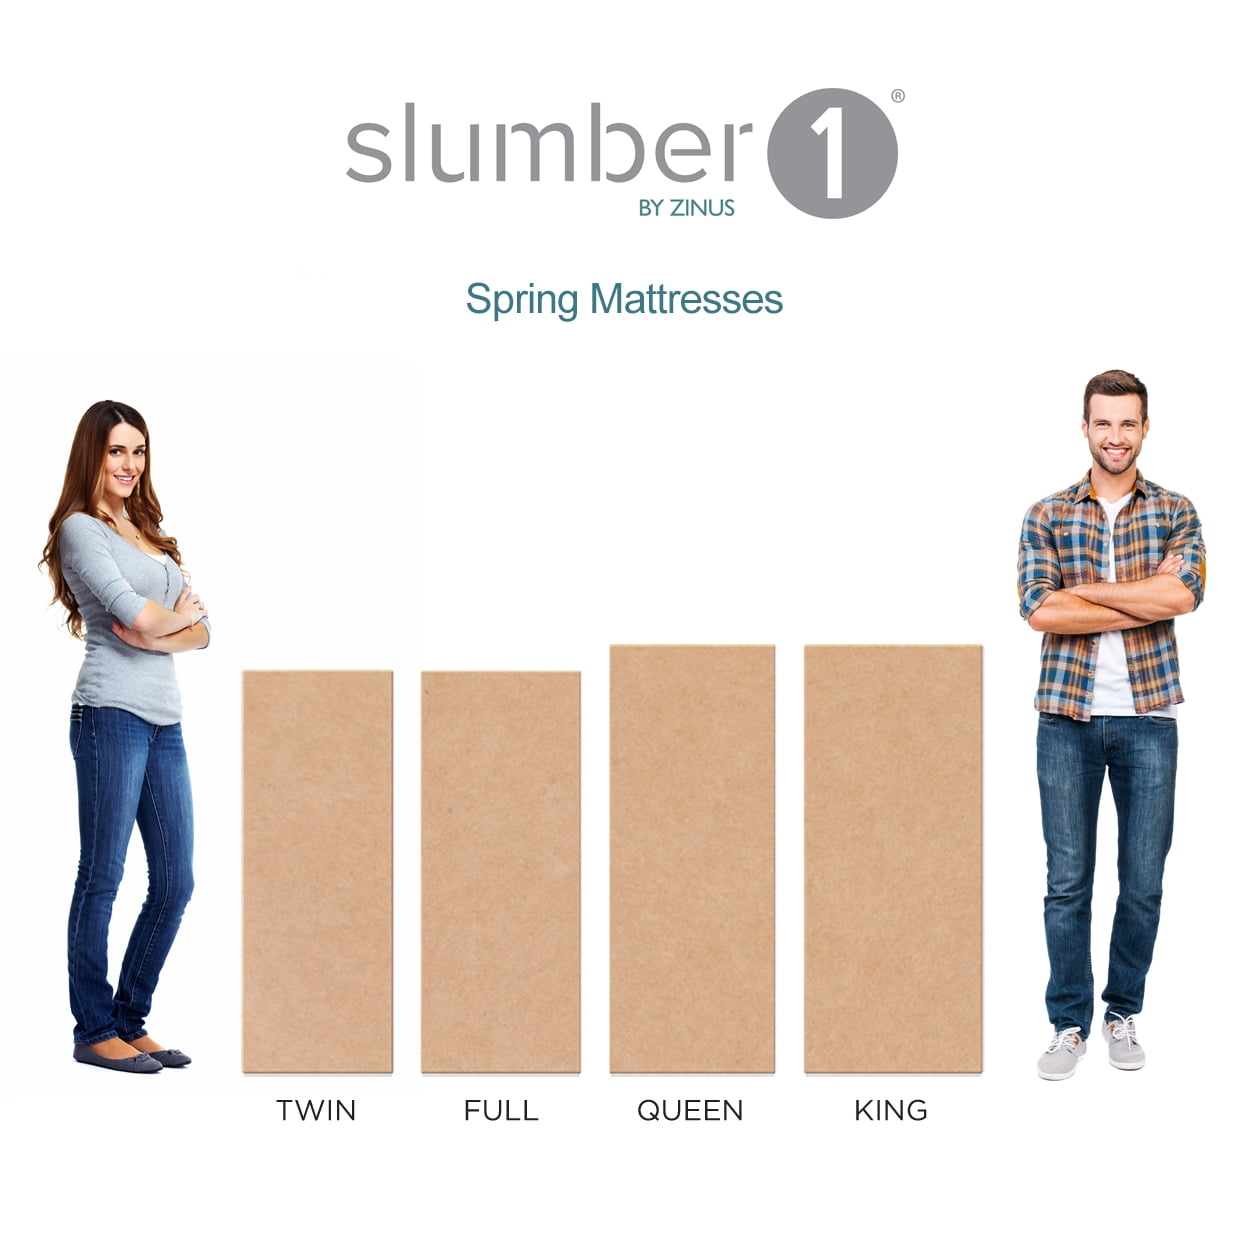 Slumber 1 By Zinus Comfort 6 Twin, Slumber 1 Comfort 6 Bunk Bed Spring Mattress Multiple Sizes